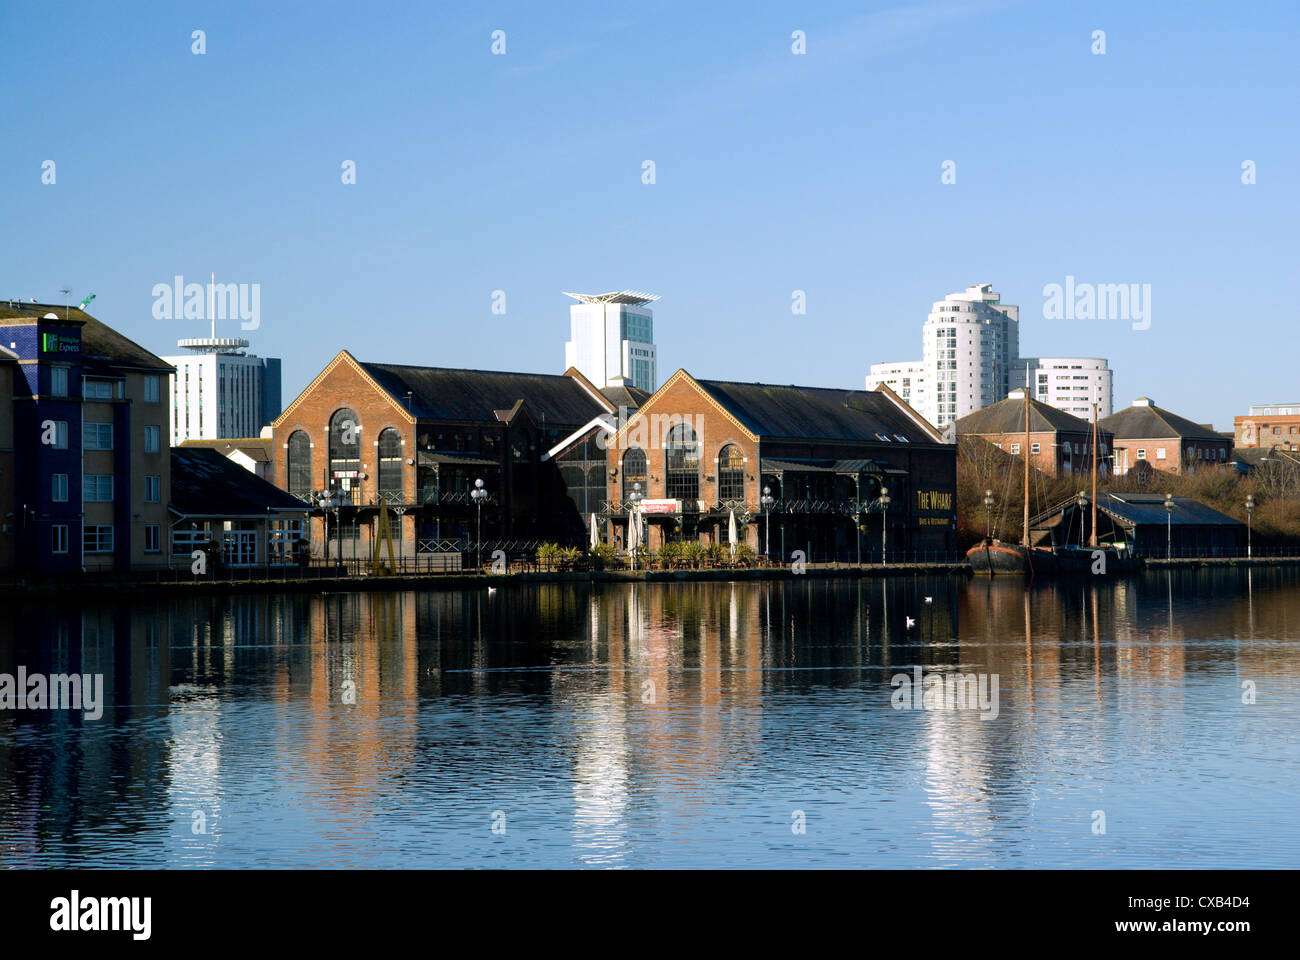 Quai de l'Atlantique avec le Wharf Inn et moderne tour de blocs dans la distance, la baie de Cardiff, Cardiff, Pays de Galles, Royaume-Uni. Banque D'Images